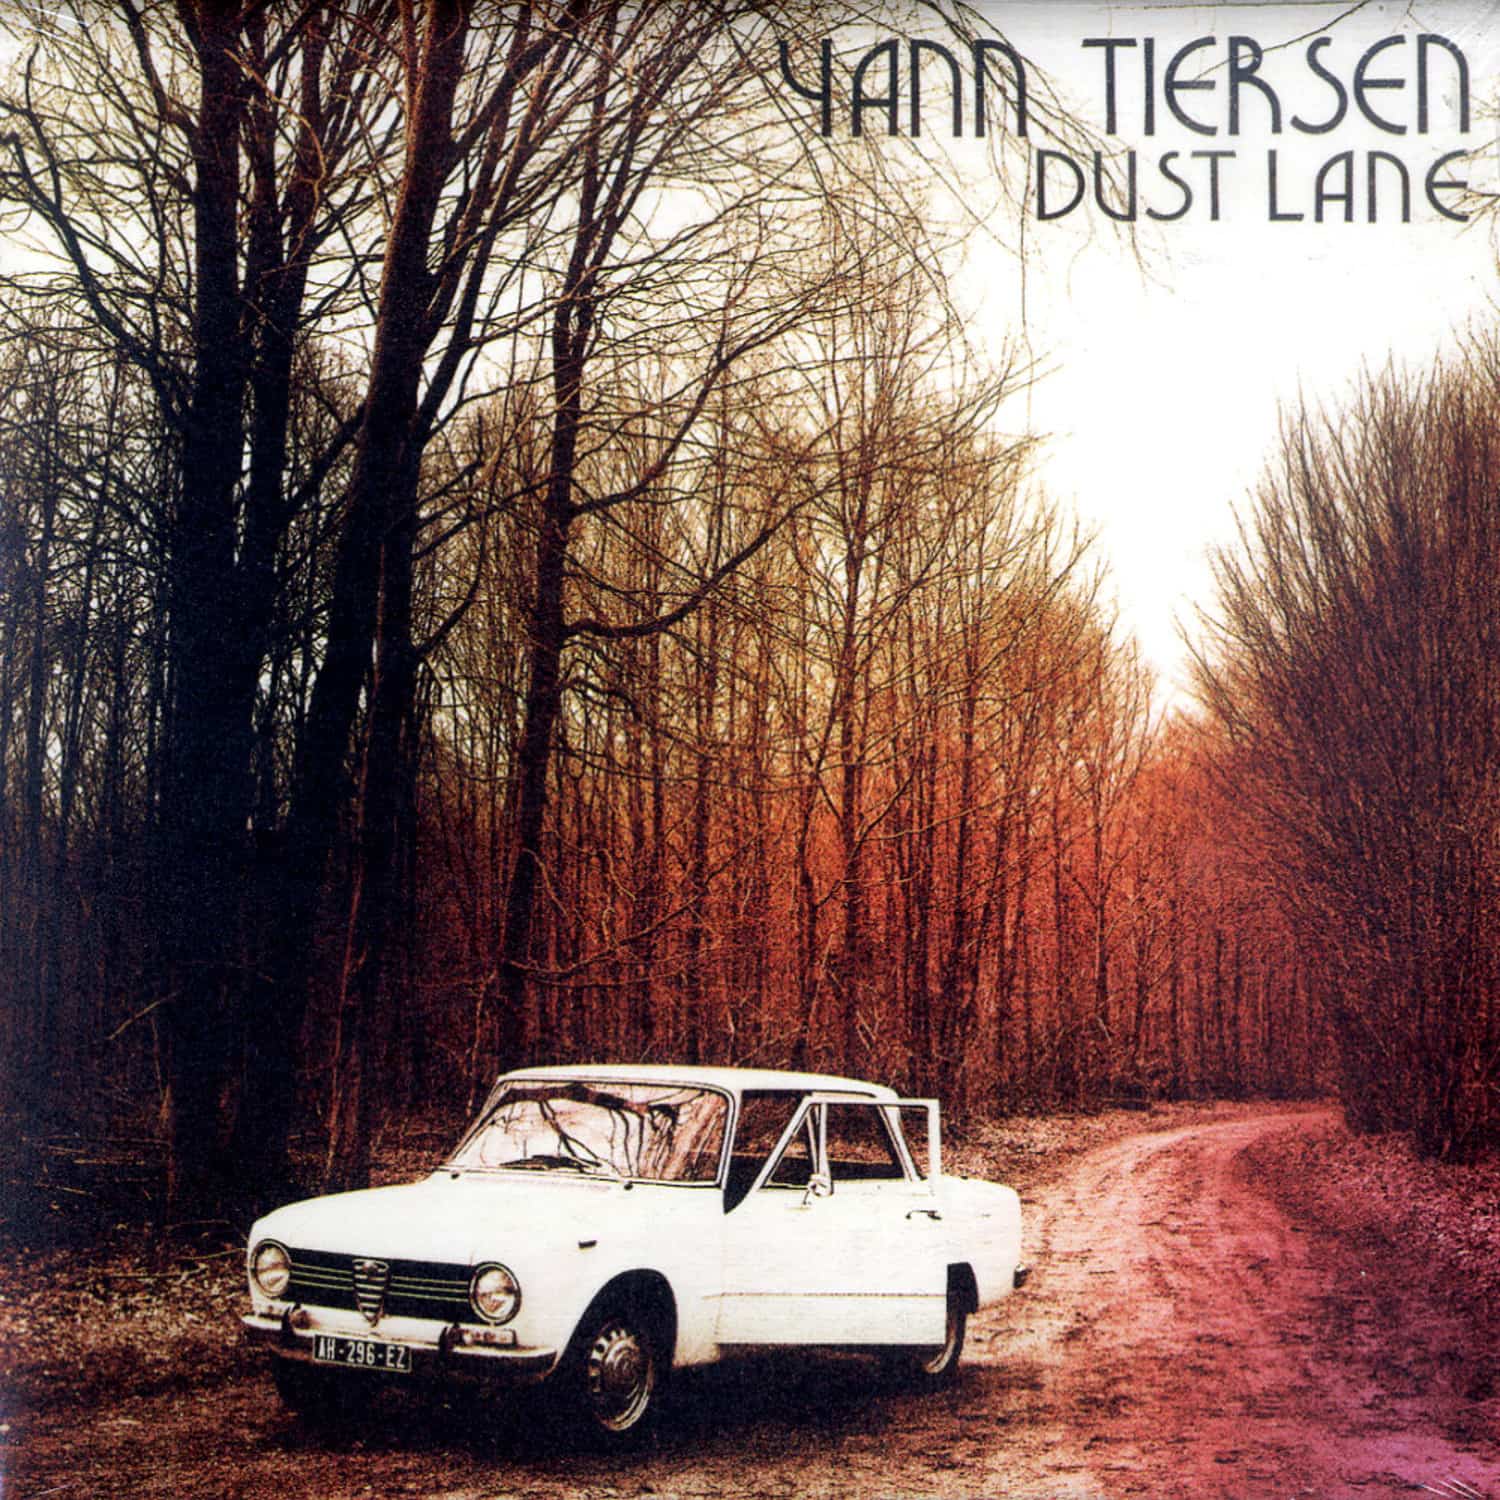 Yann Tiersen - DUST LANE 